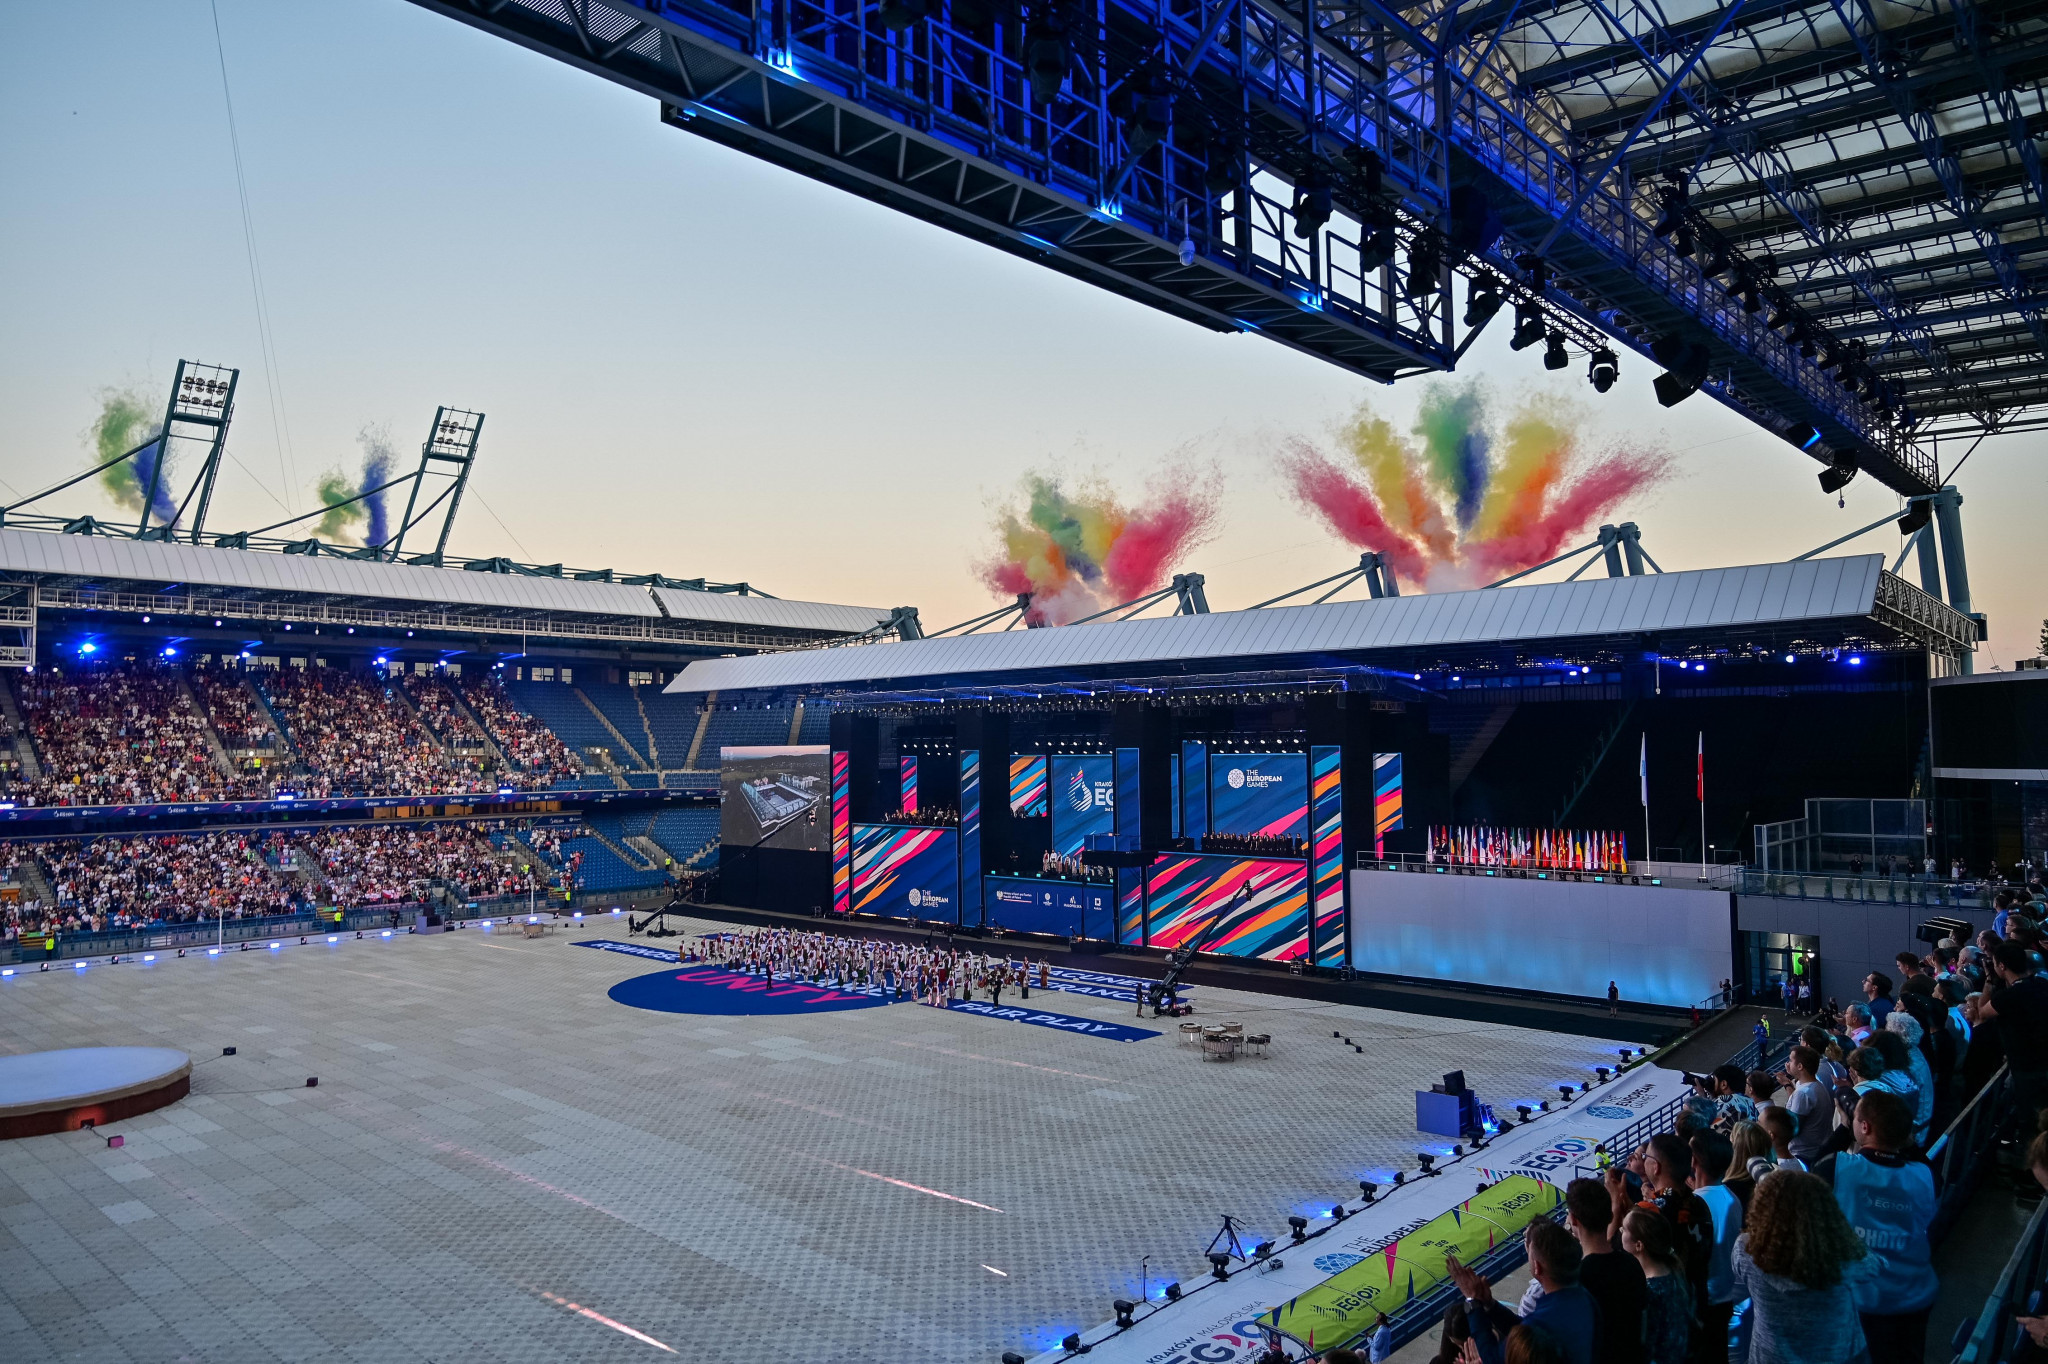 Kraków-Małopolska 2023 European Games: Closing Ceremony